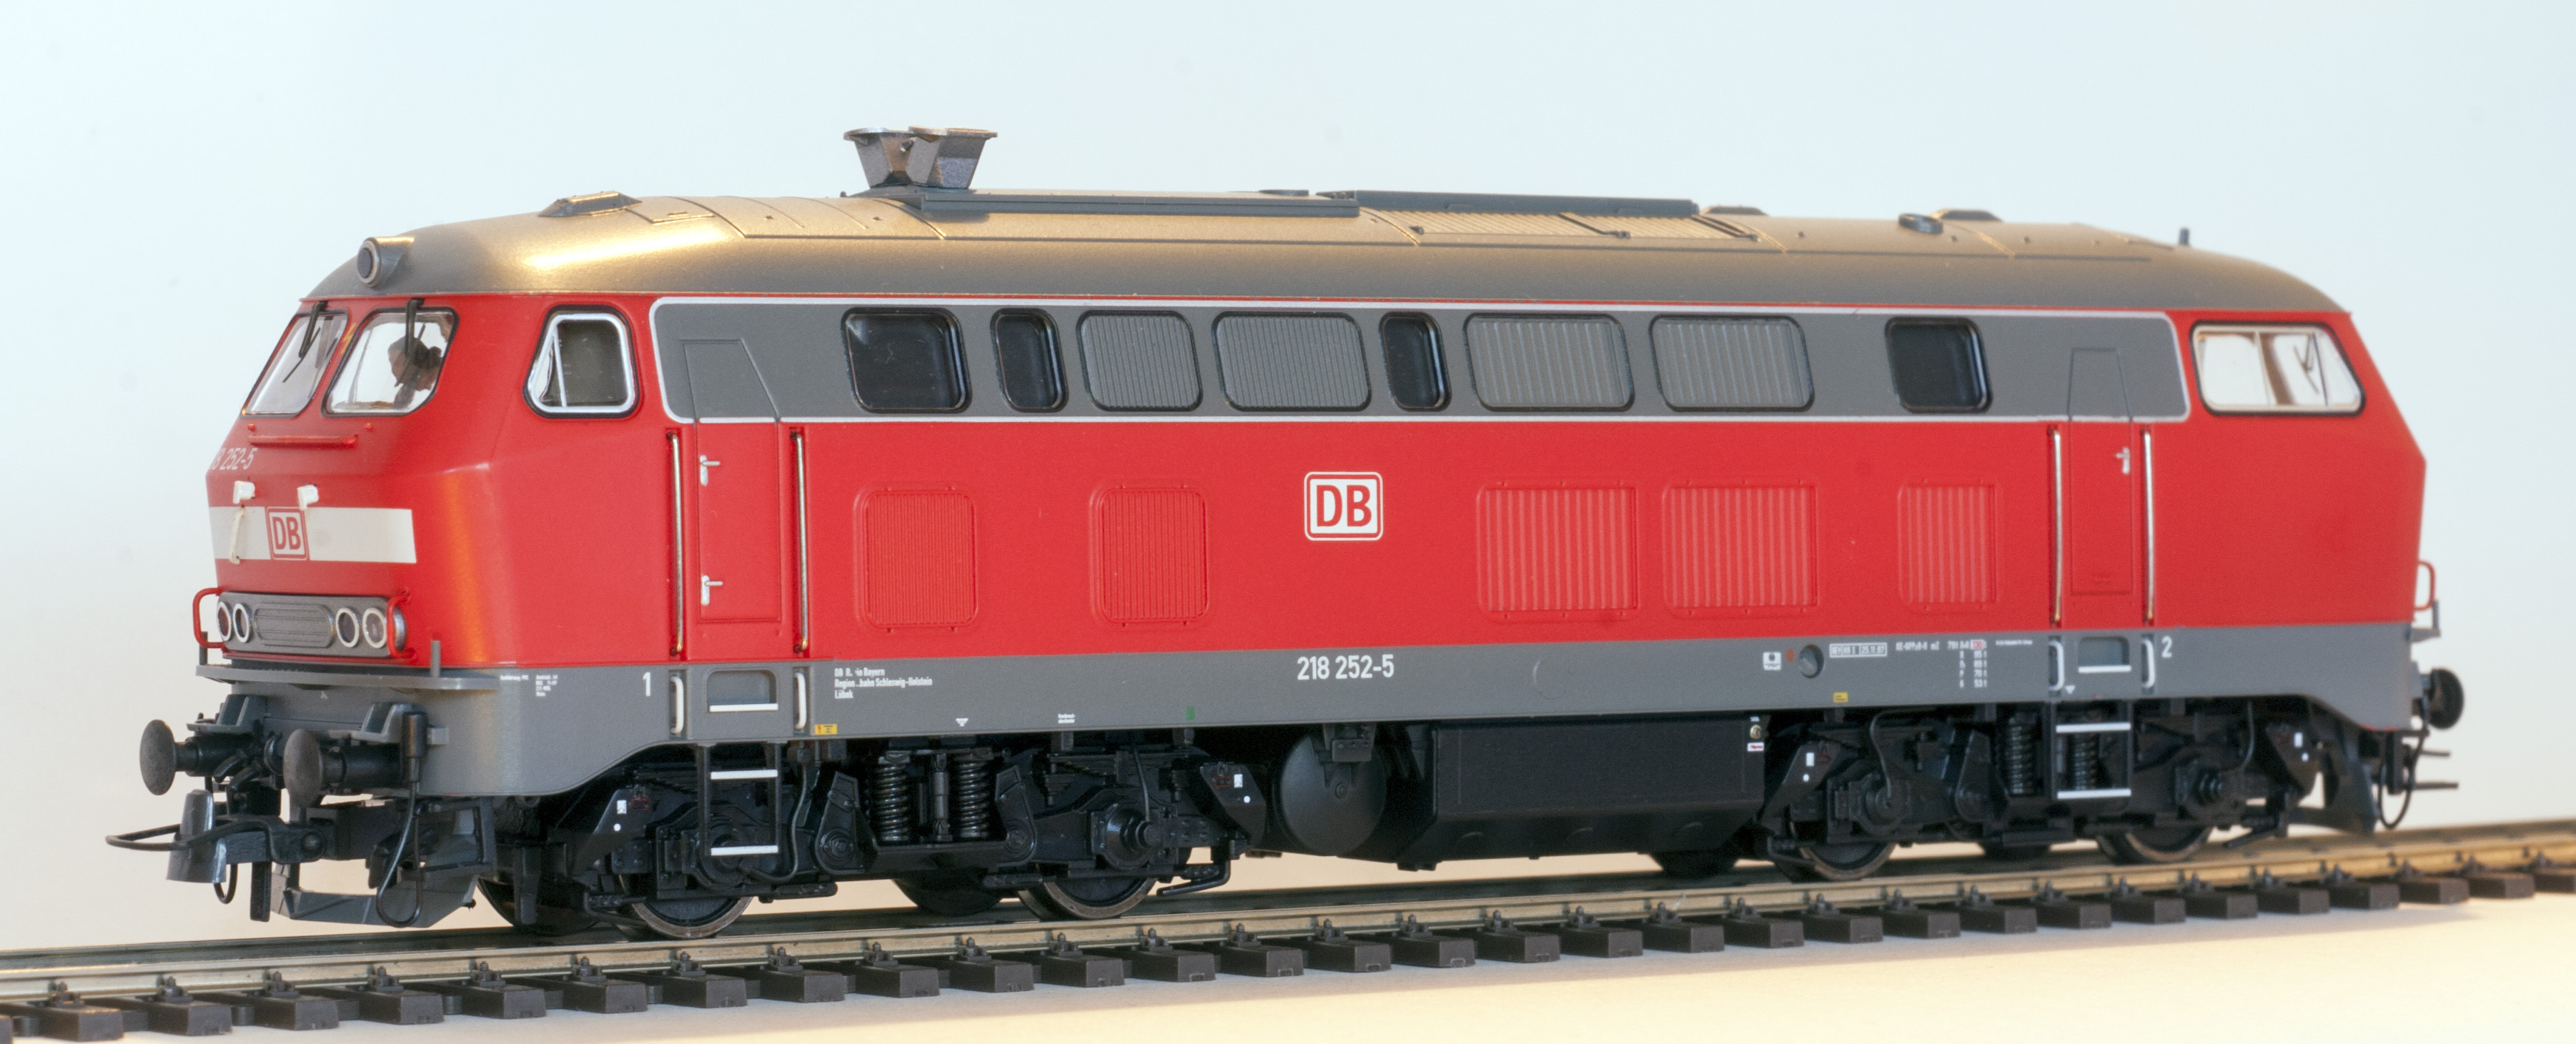 Modell der 212 252-5 in Verkehrsrot von Roco (Artikelnummer 72751) Regionalbahn Schleswig-Holstein REV HB X 25.11.97